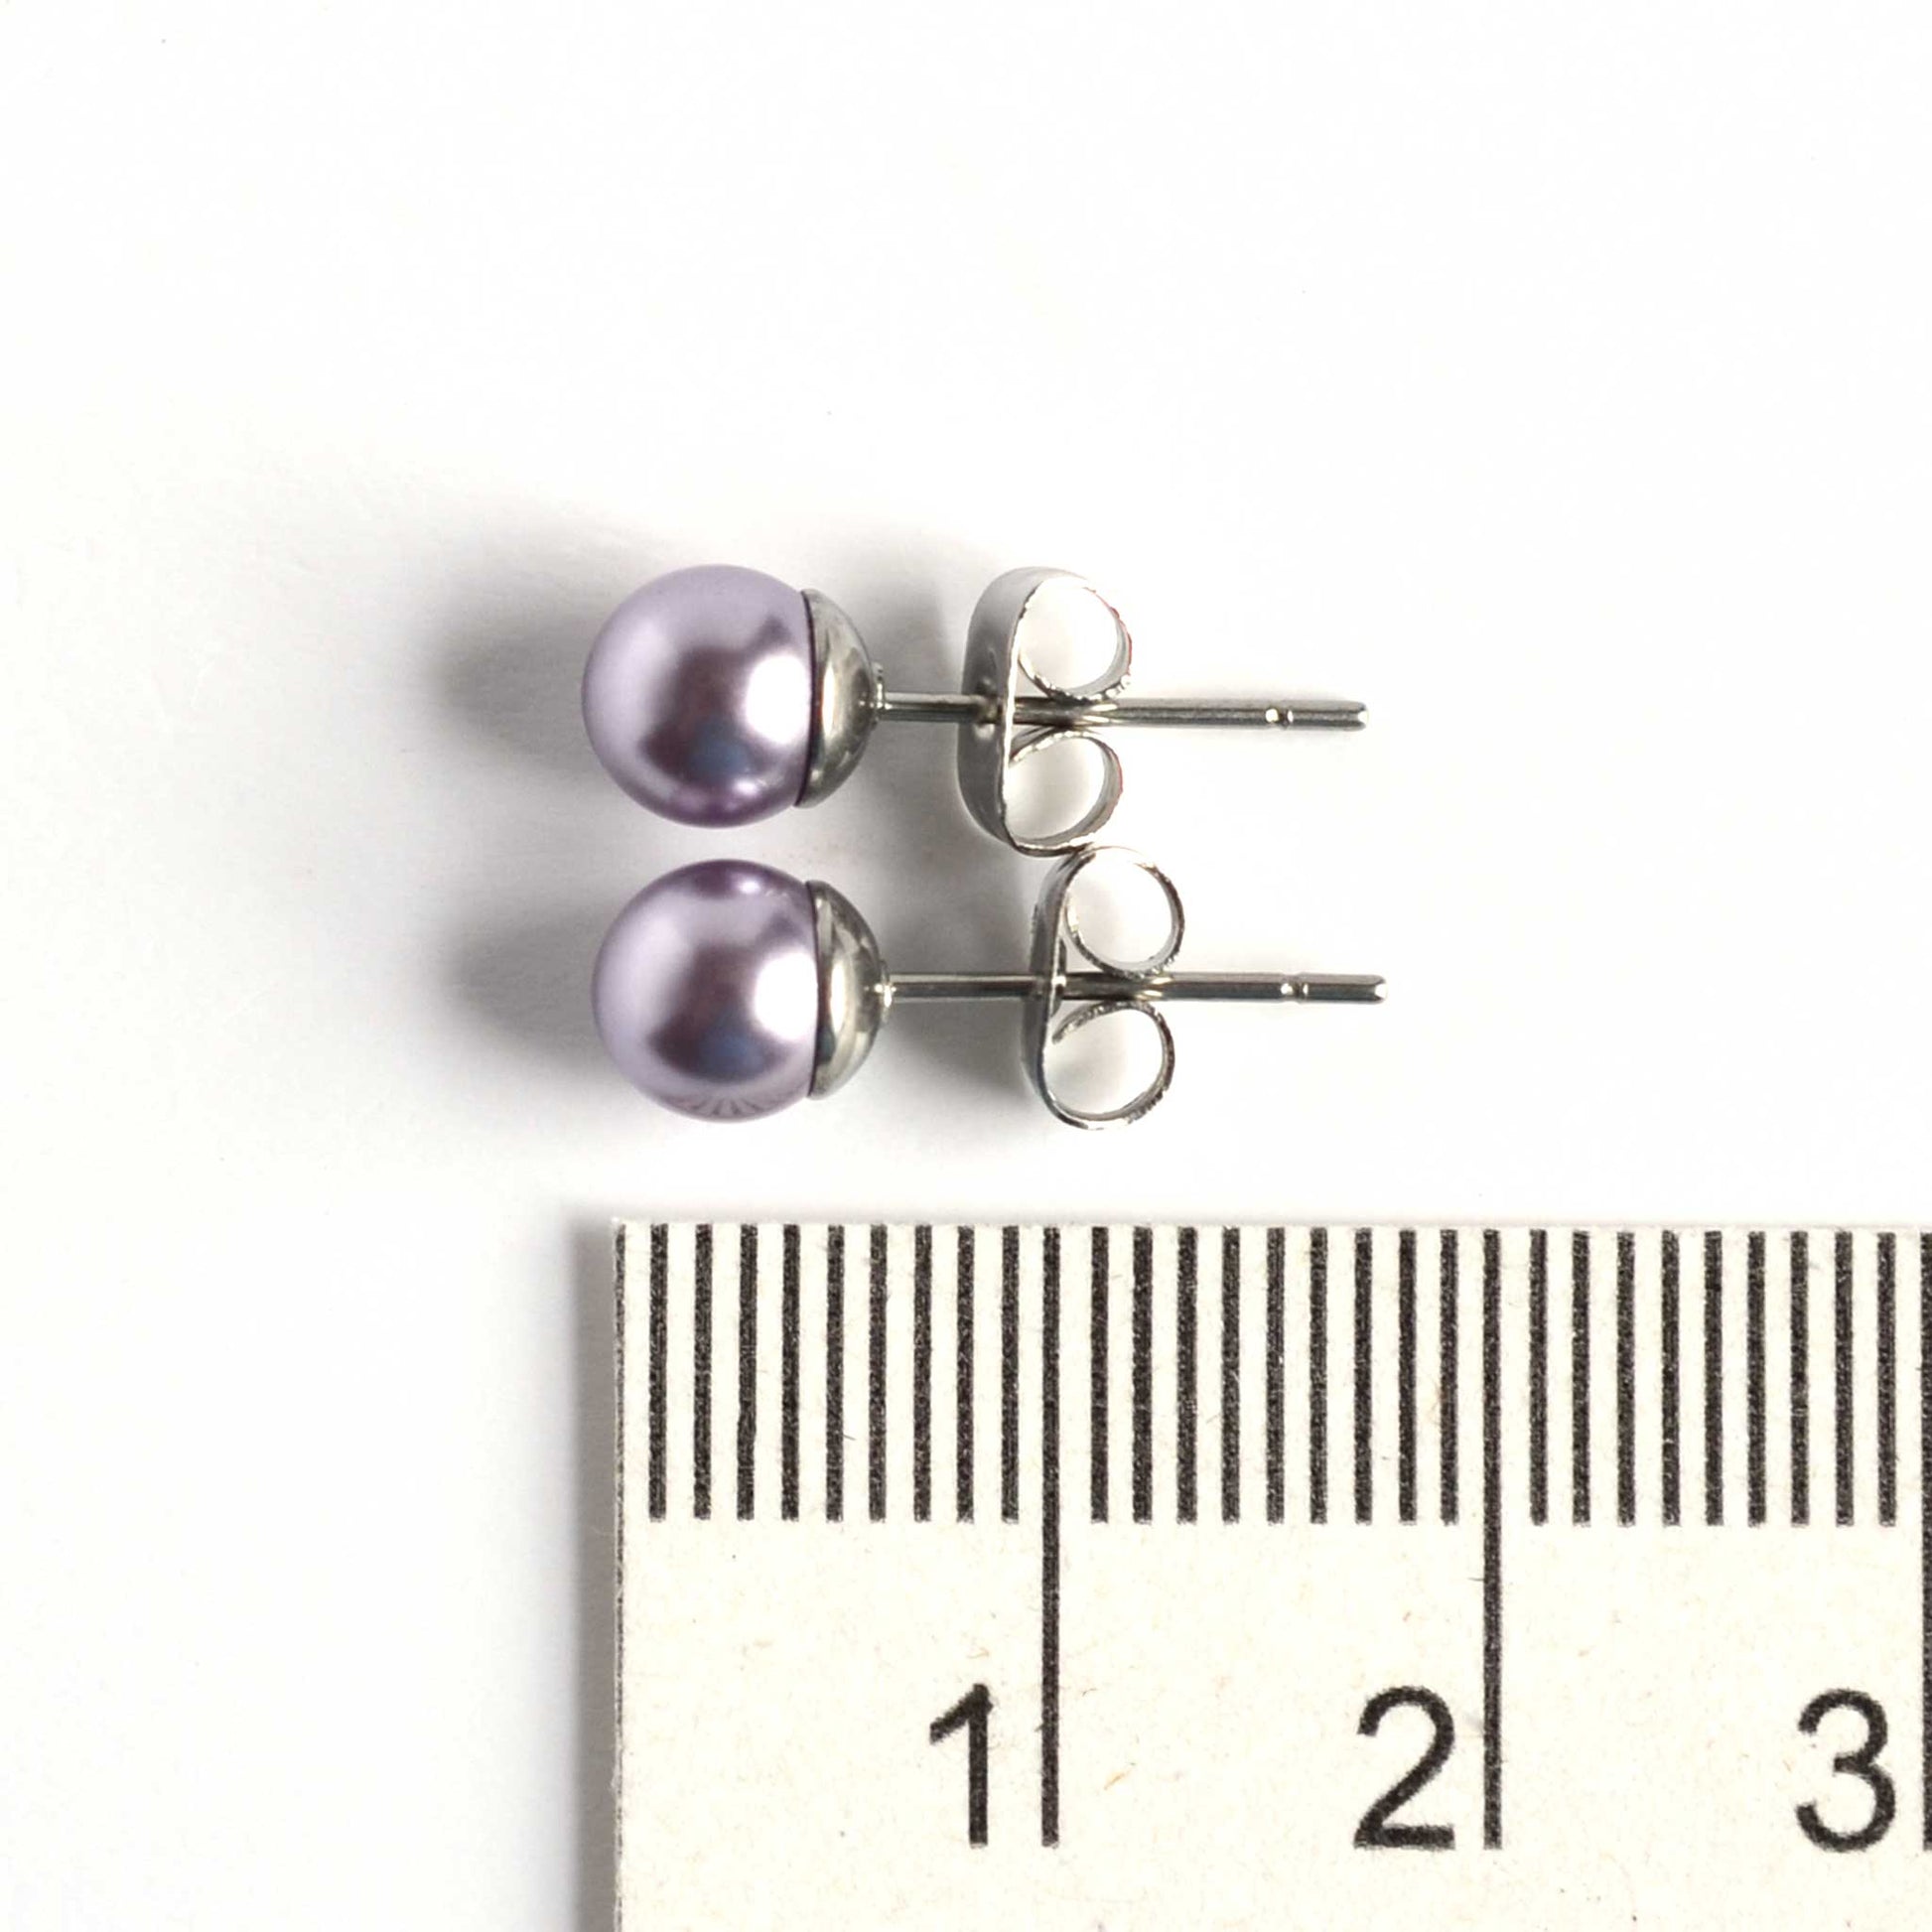 6mm light purple faux pearl stud earrings next to ruler